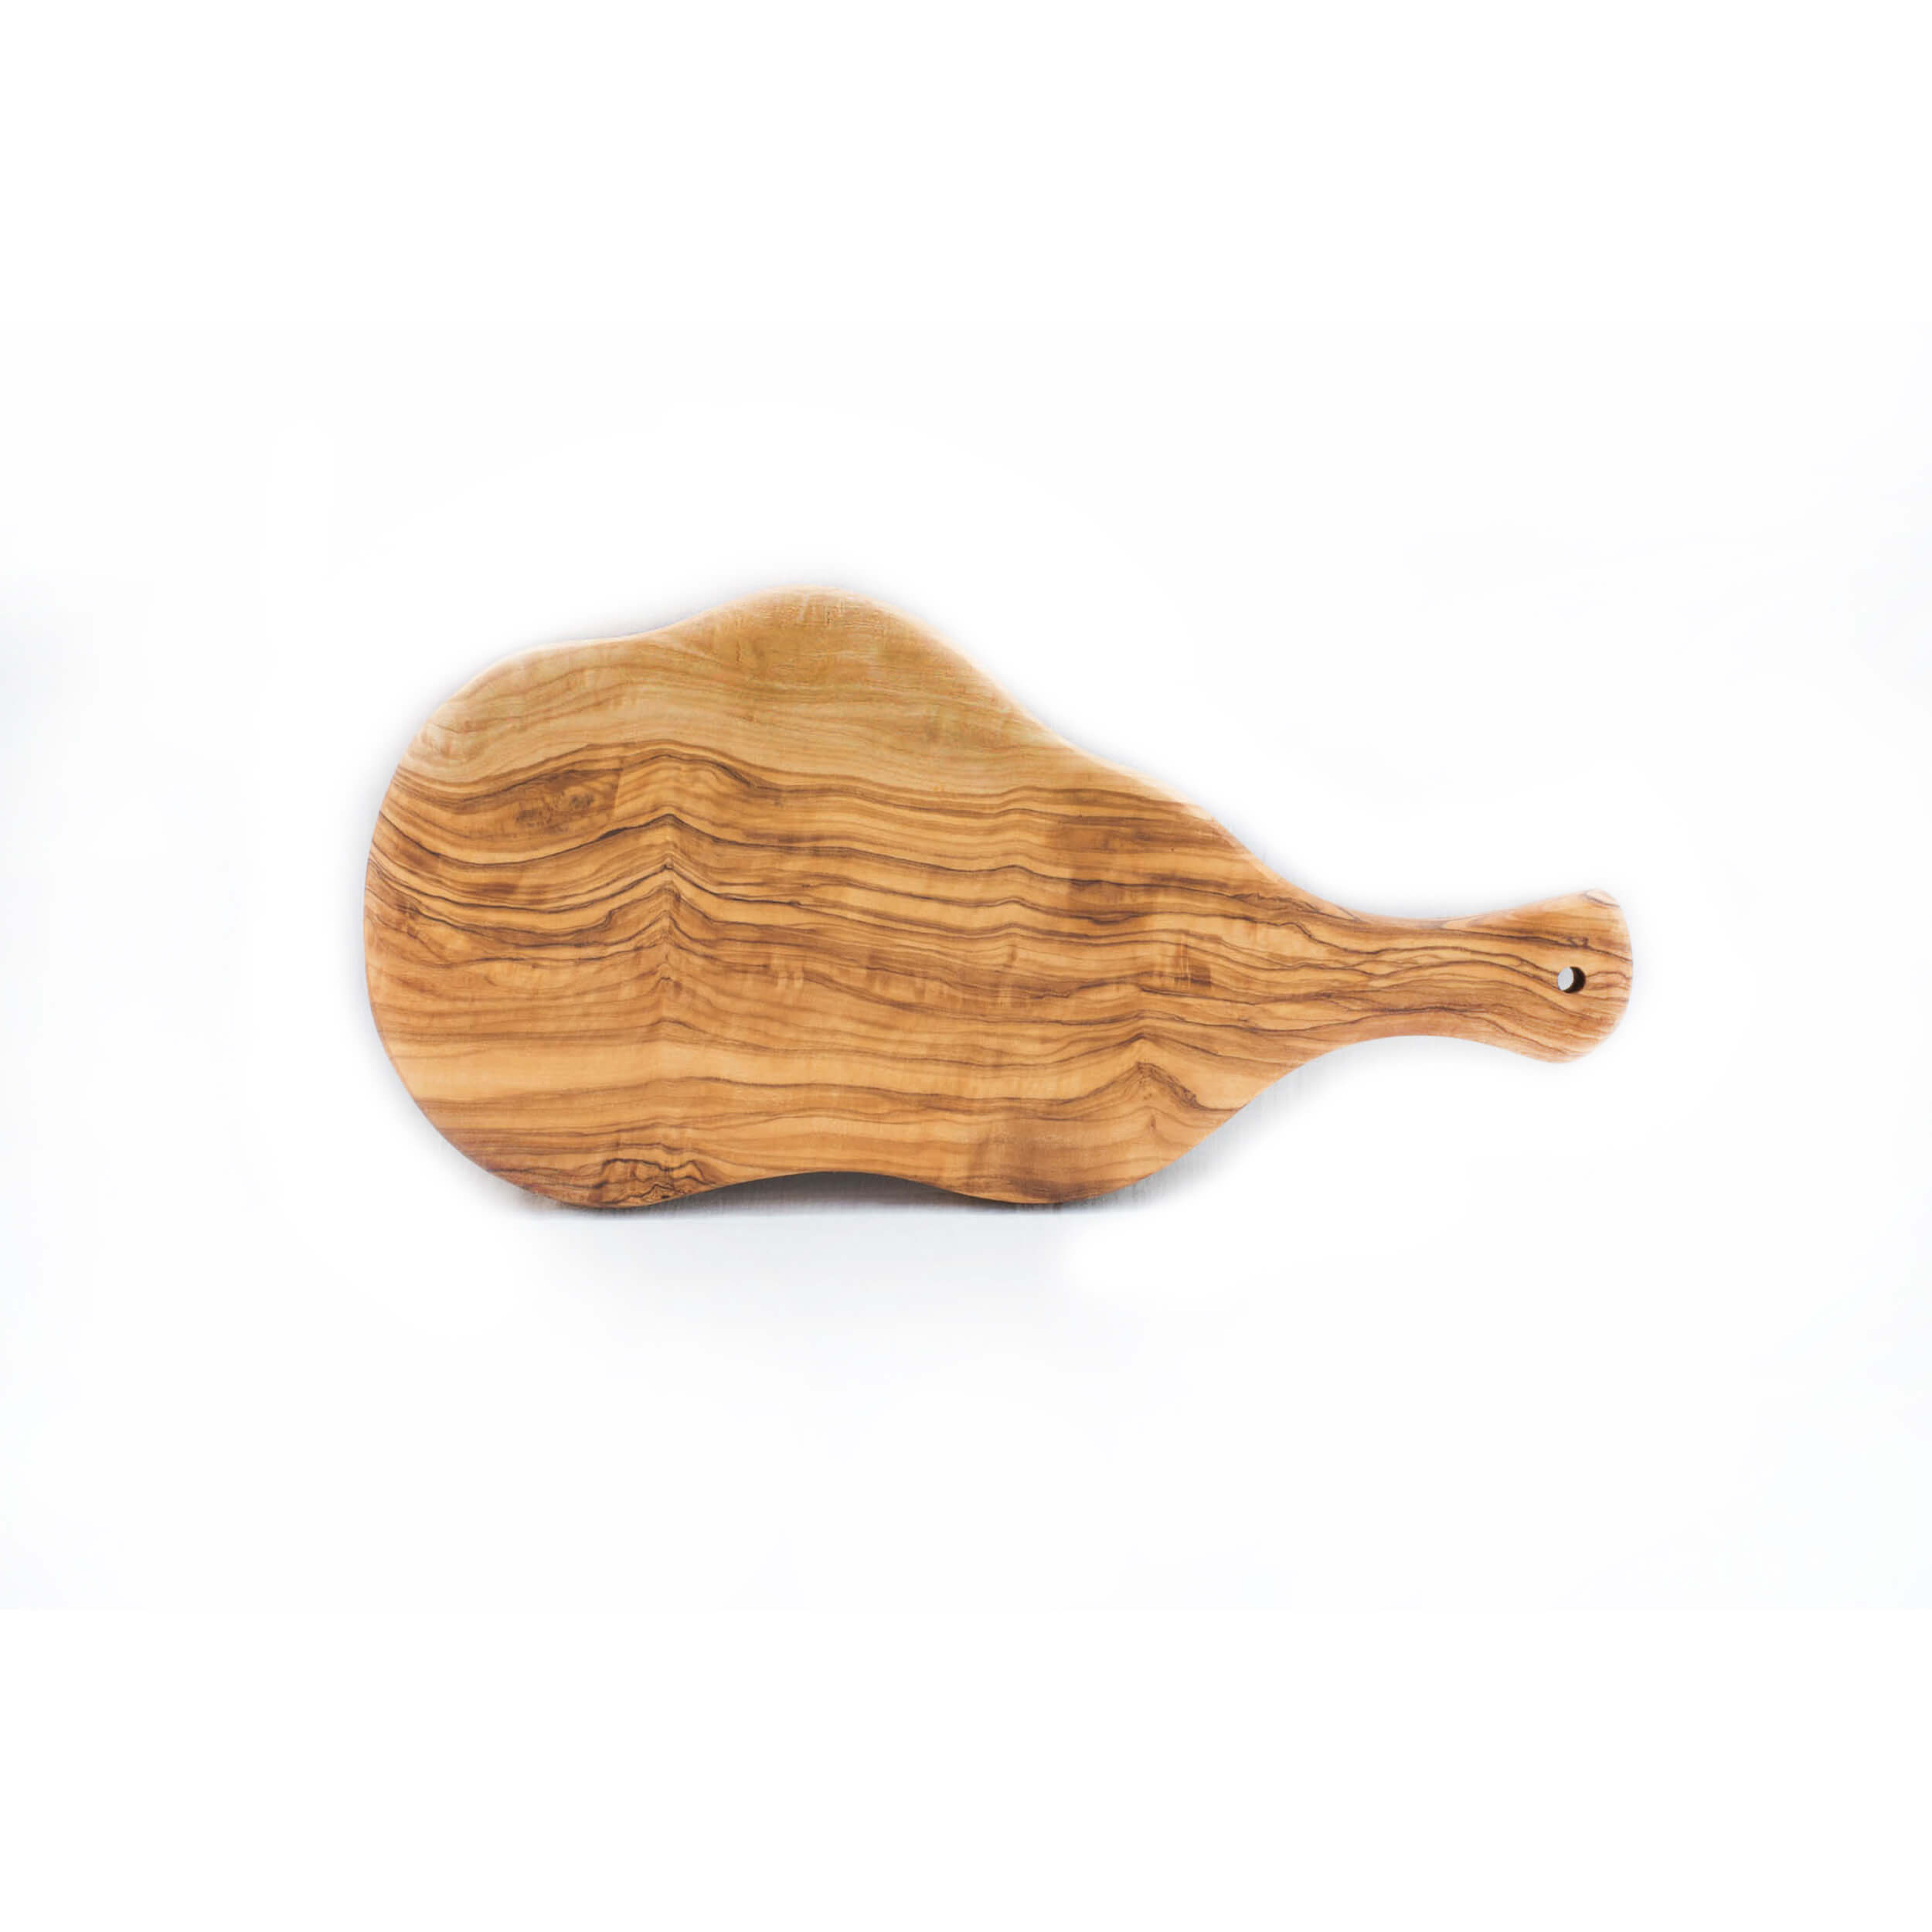 Σανίδα σε Σχήμα Μπριζολας 'Mavridis Wooden Products' 640gr